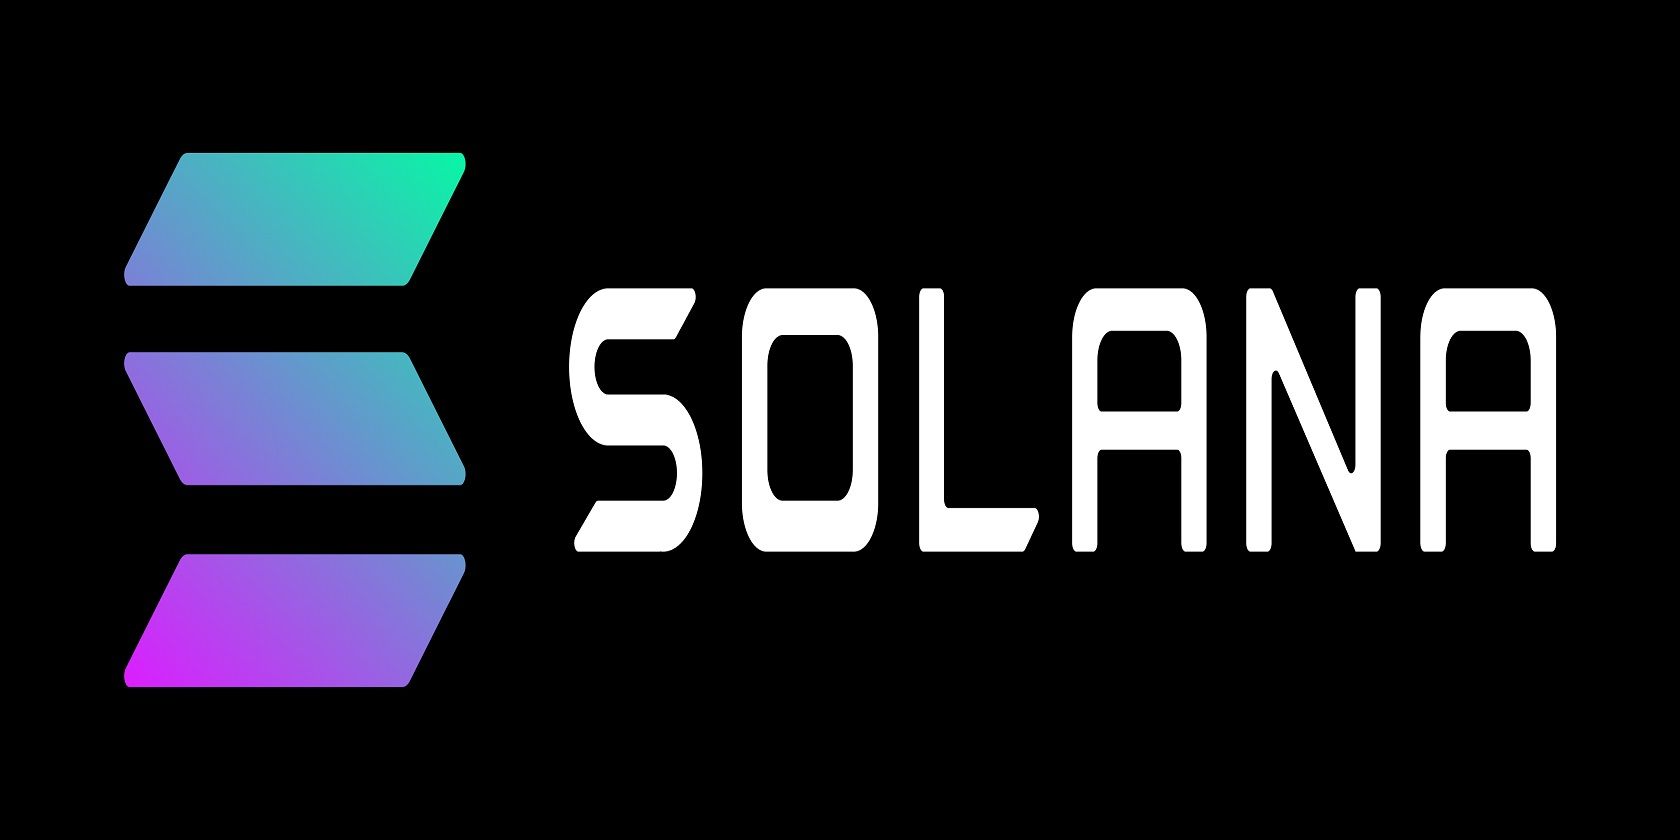 Solana-feature1-3b5e106f